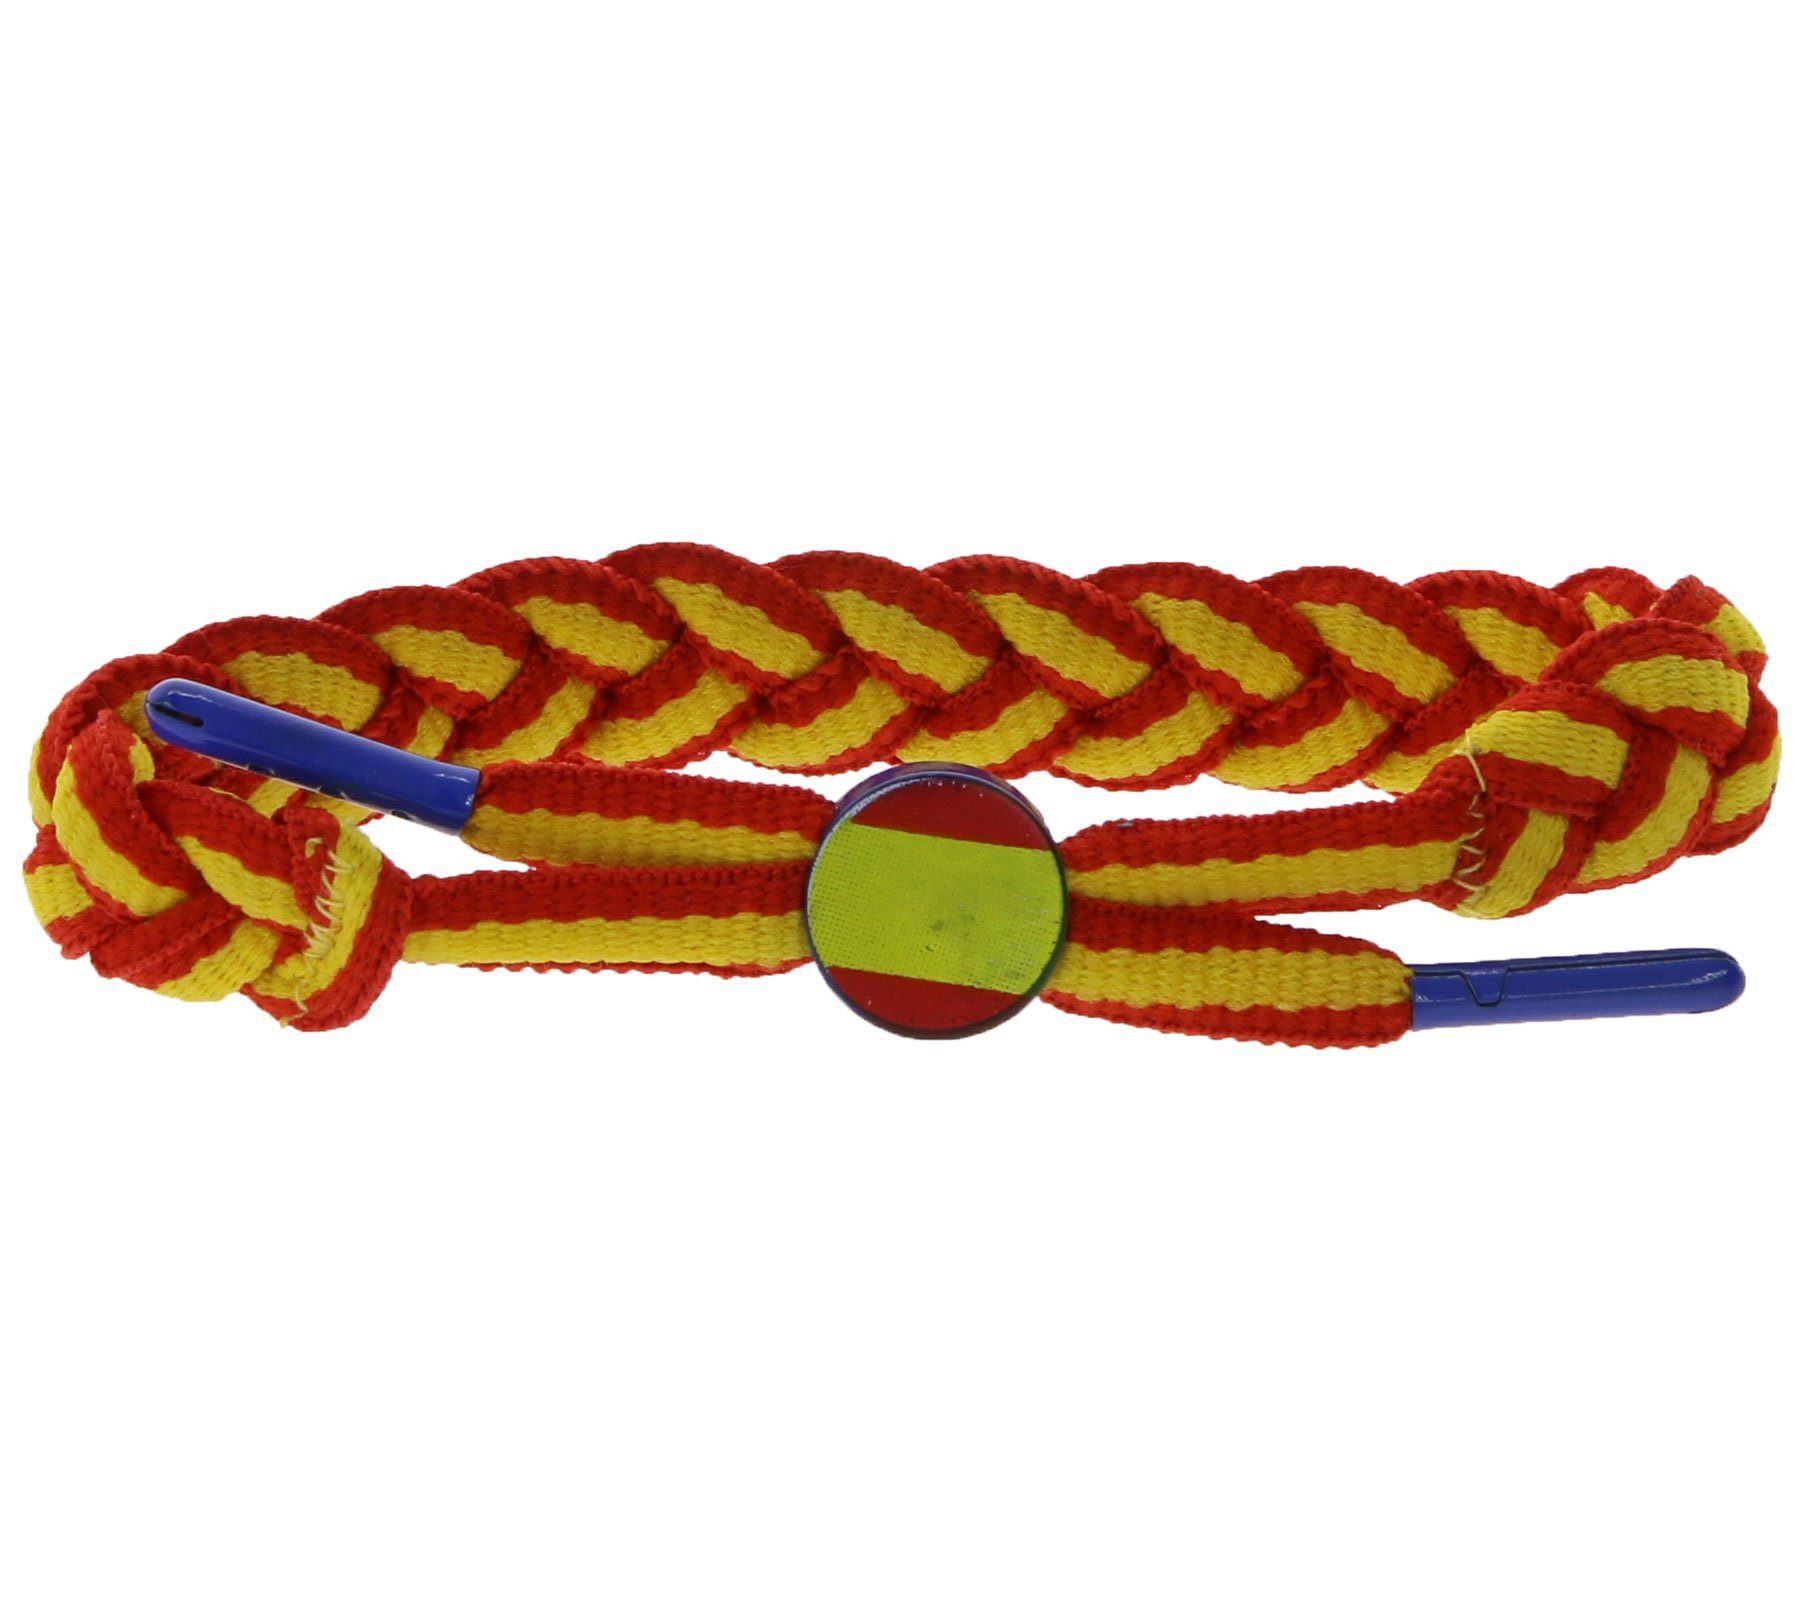 Herren Schmuck C3 Armband C3 Armband modisches Textil-Armband Spanische Flagge Arm-Schmuck Gelb/Rot